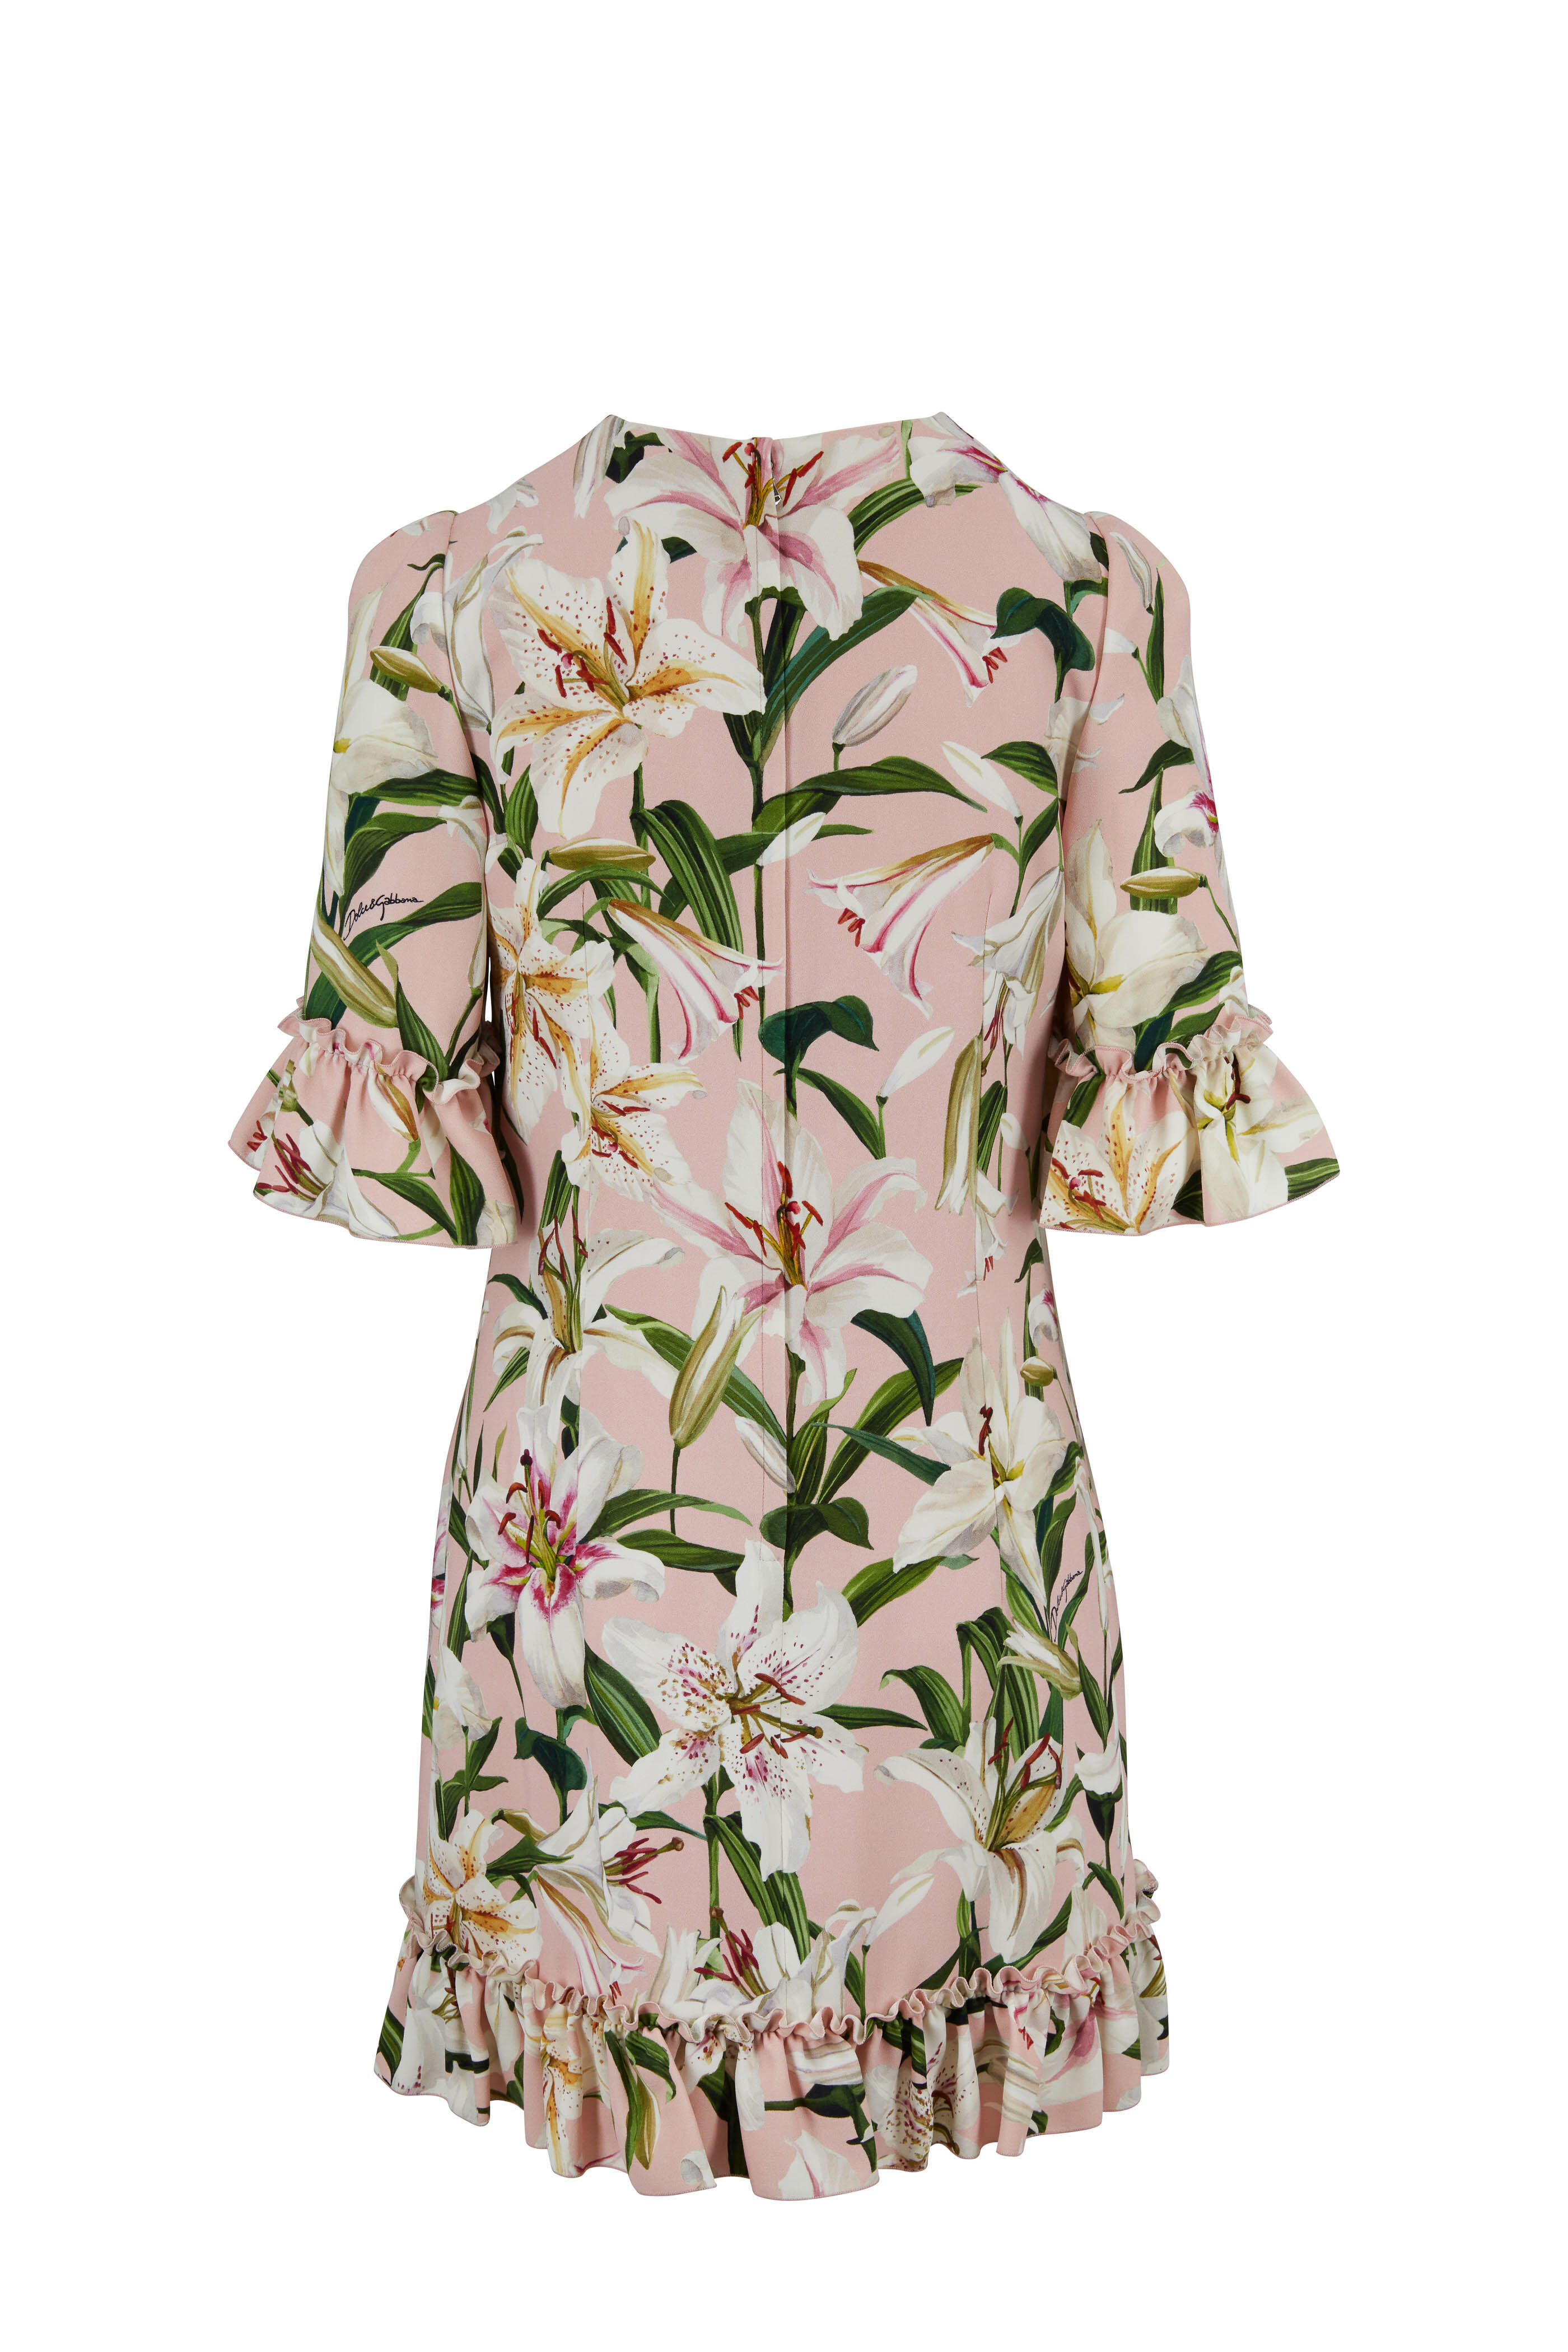 Dolce & Gabbana - Light Pink Lily Print Ruffle Dress